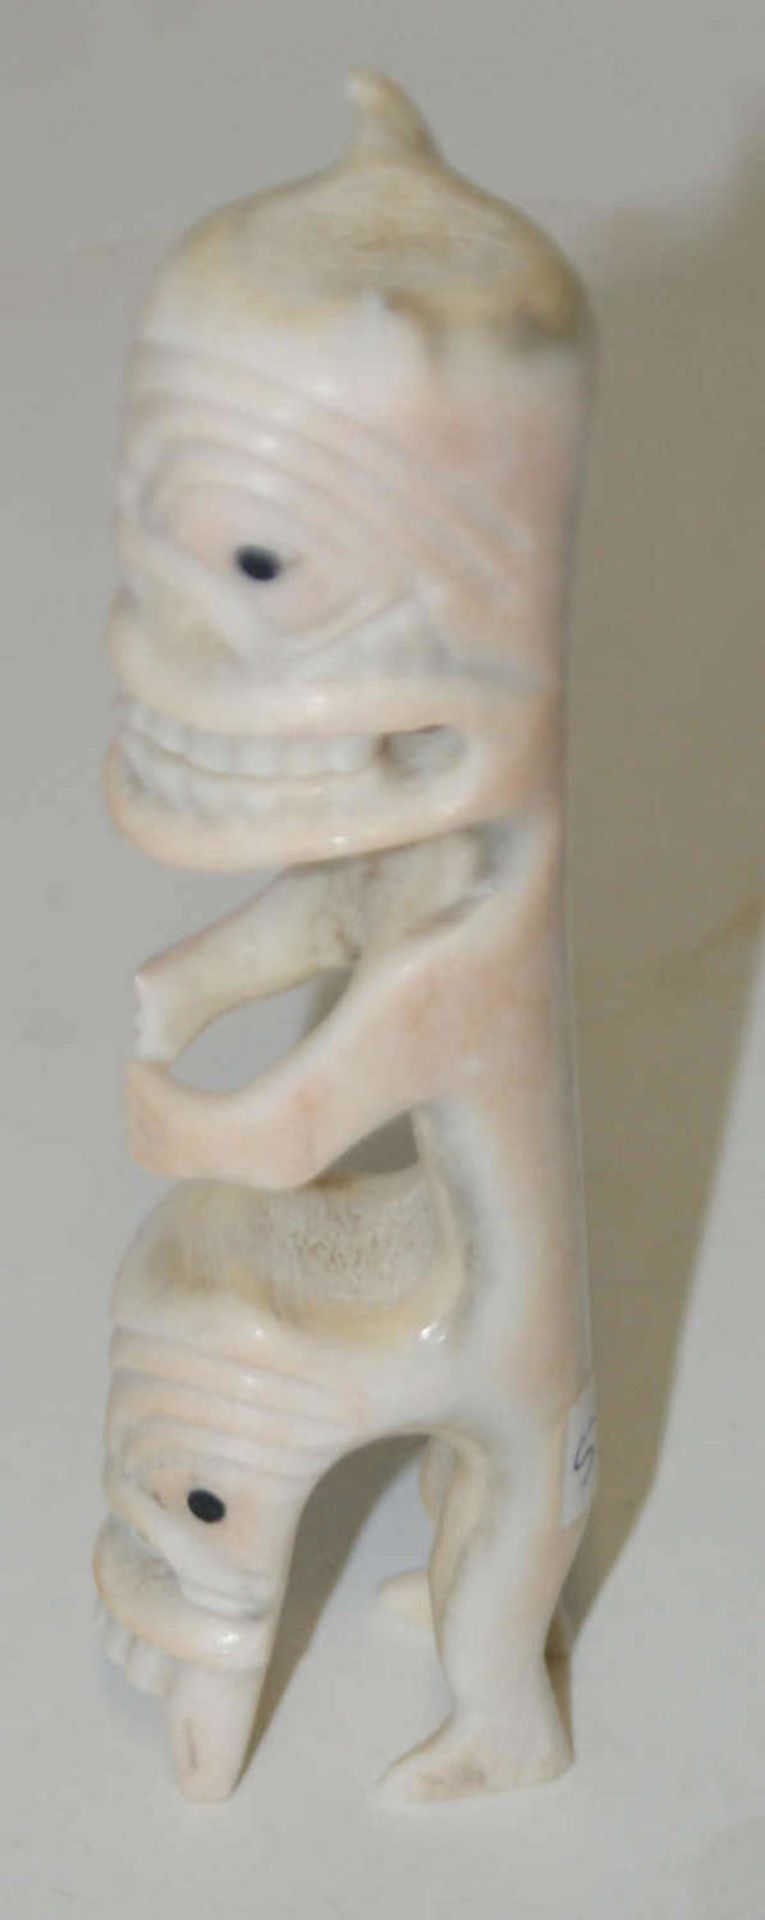 Ältere Knochenfigur, wohl Afrika, Höhe ca. 12 cm. Besichtigung empfohlen. - Bild 2 aus 2